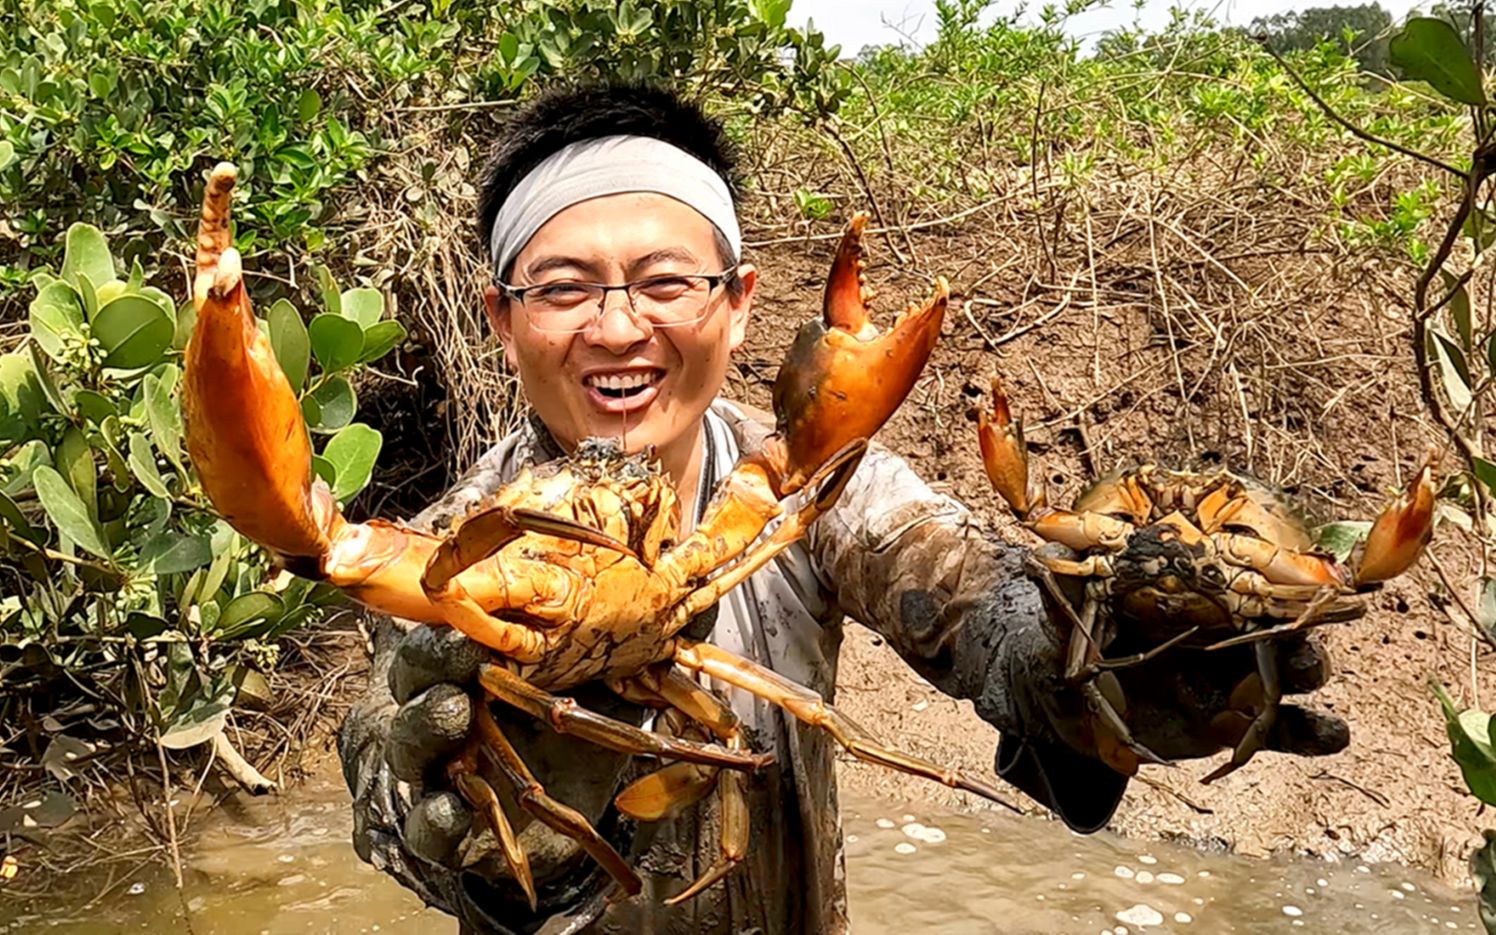 捞螃蟹、品螃蟹……他们这样过农民丰收节 -青报网-青岛日报官网